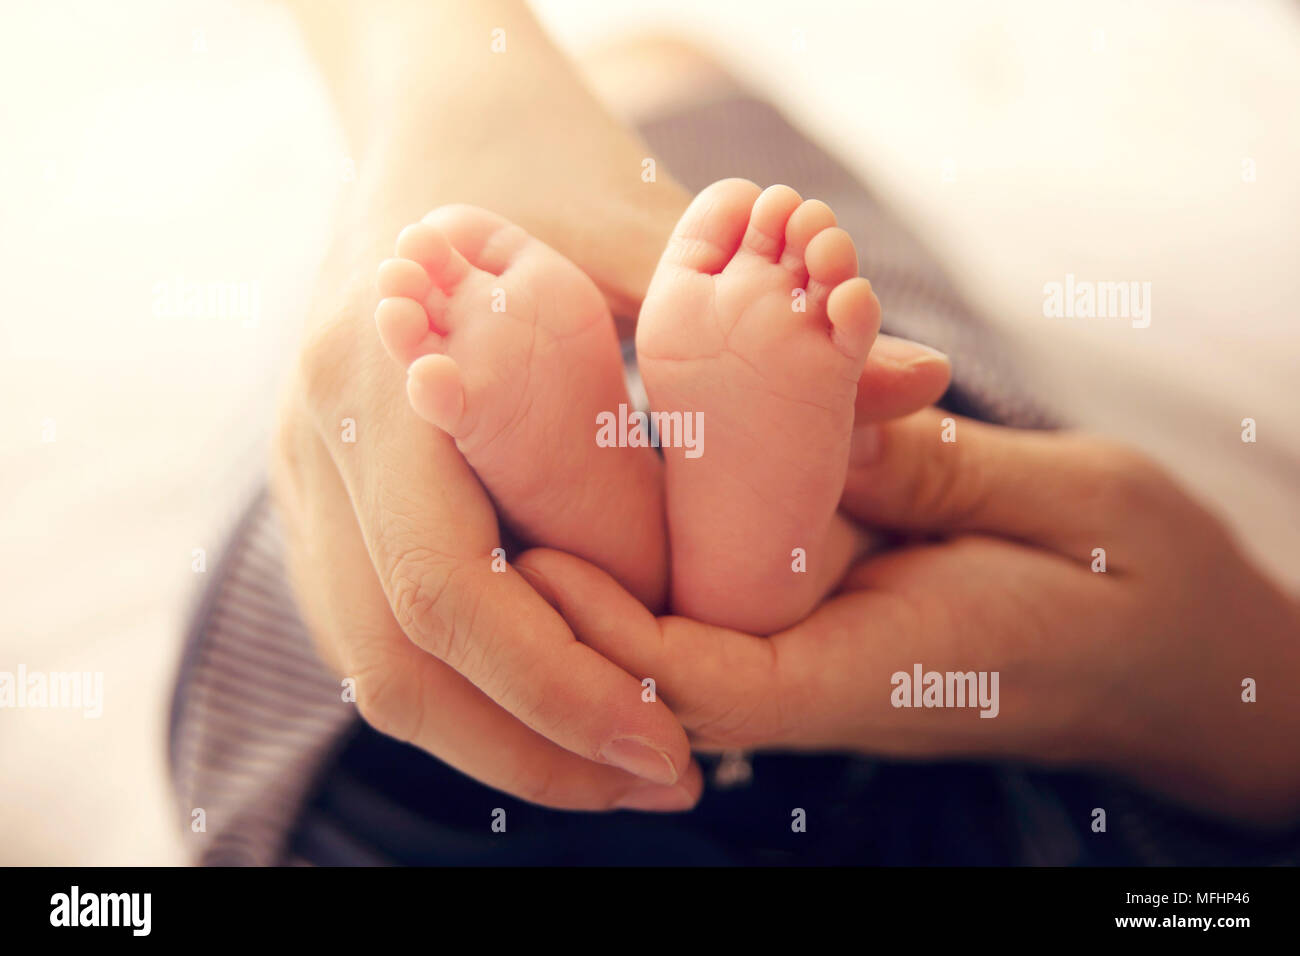 Neonato piedi nelle mani di Madre con luce solare morbido. immagine concettuale della maternità Foto Stock